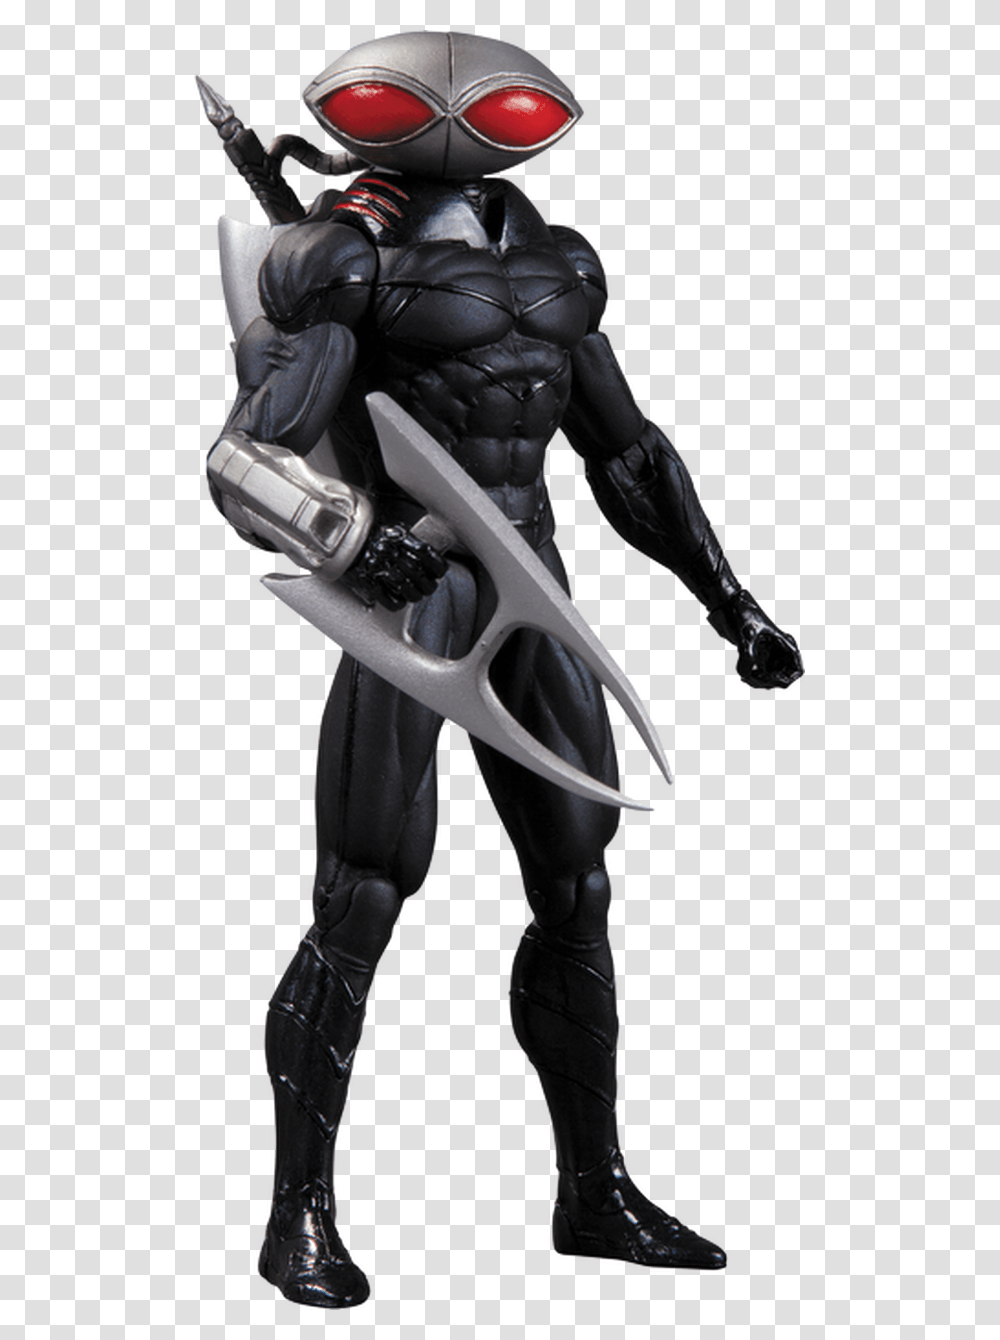 Black Manta Action Figure Black Manta New 52 Action Figure, Person, Human, Ninja, Batman Transparent Png